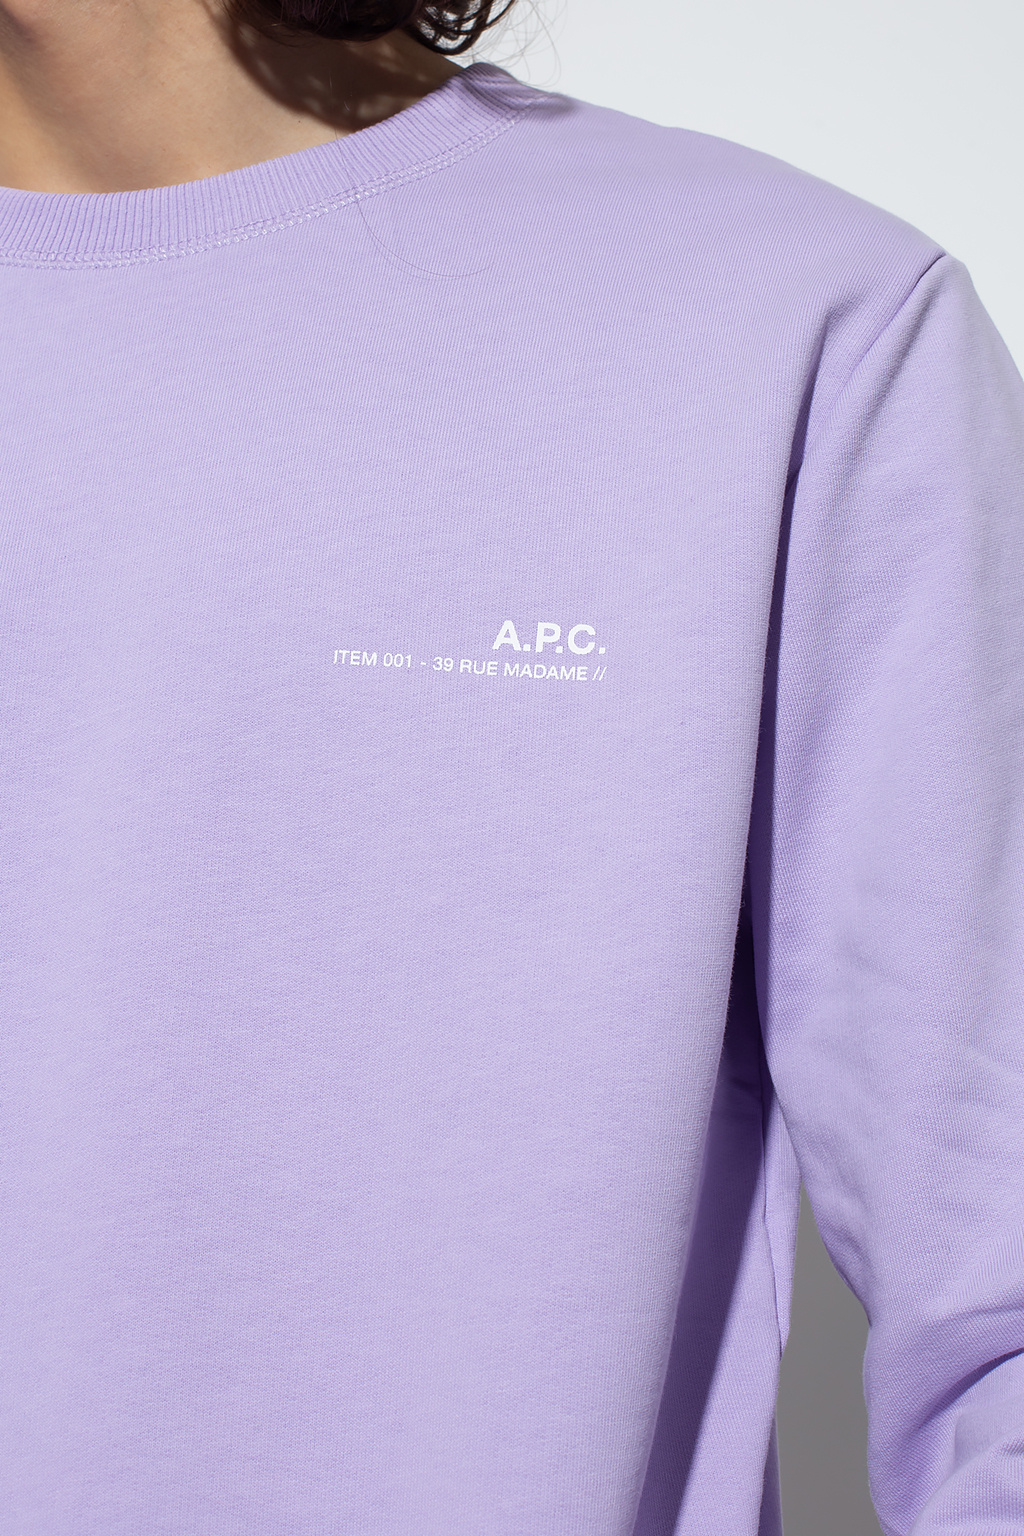 A.P.C. T-Shirt Essentials Celebrate